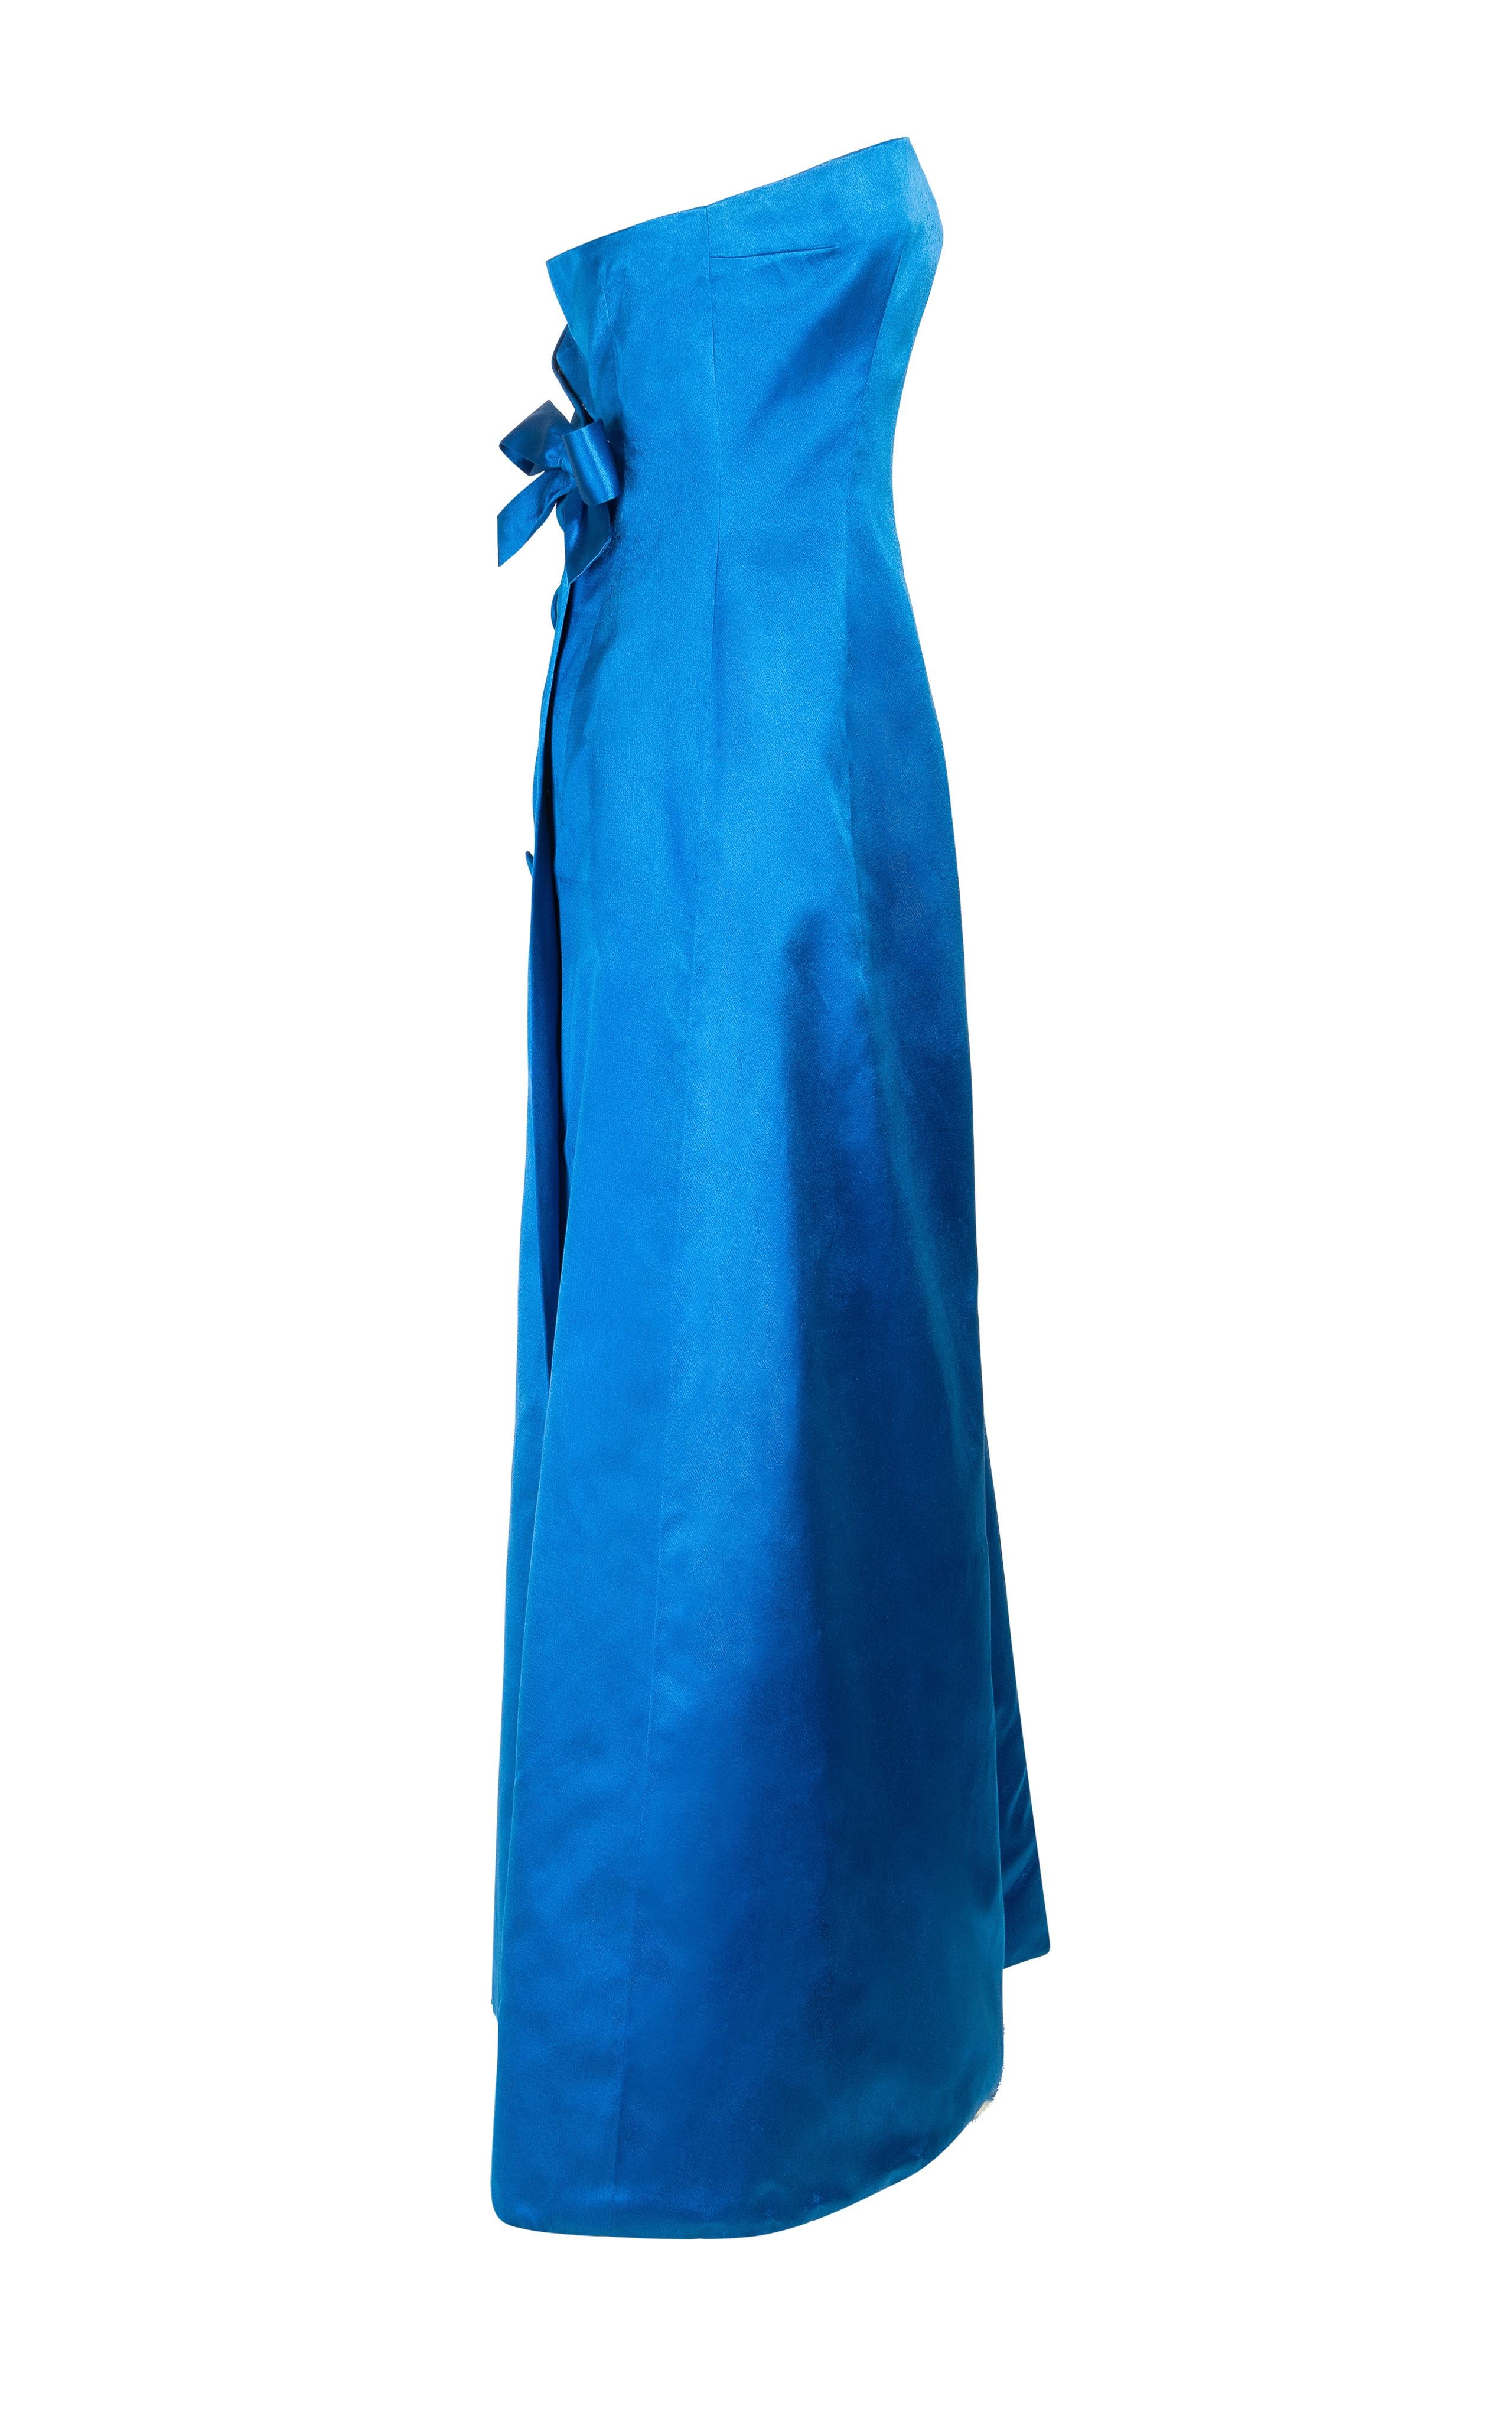 c. 1959 Jean Patou by Karl Lagerfeld Couture trägerloses Abendkleid aus blauem Satin. Dazu passende übergroße Stoffknöpfe und große Schleife am Rücken. Subtiler Wickeleffekt am Rücken mit seitlichem Überschlag am Rücken. Eingebautes Korsett aus